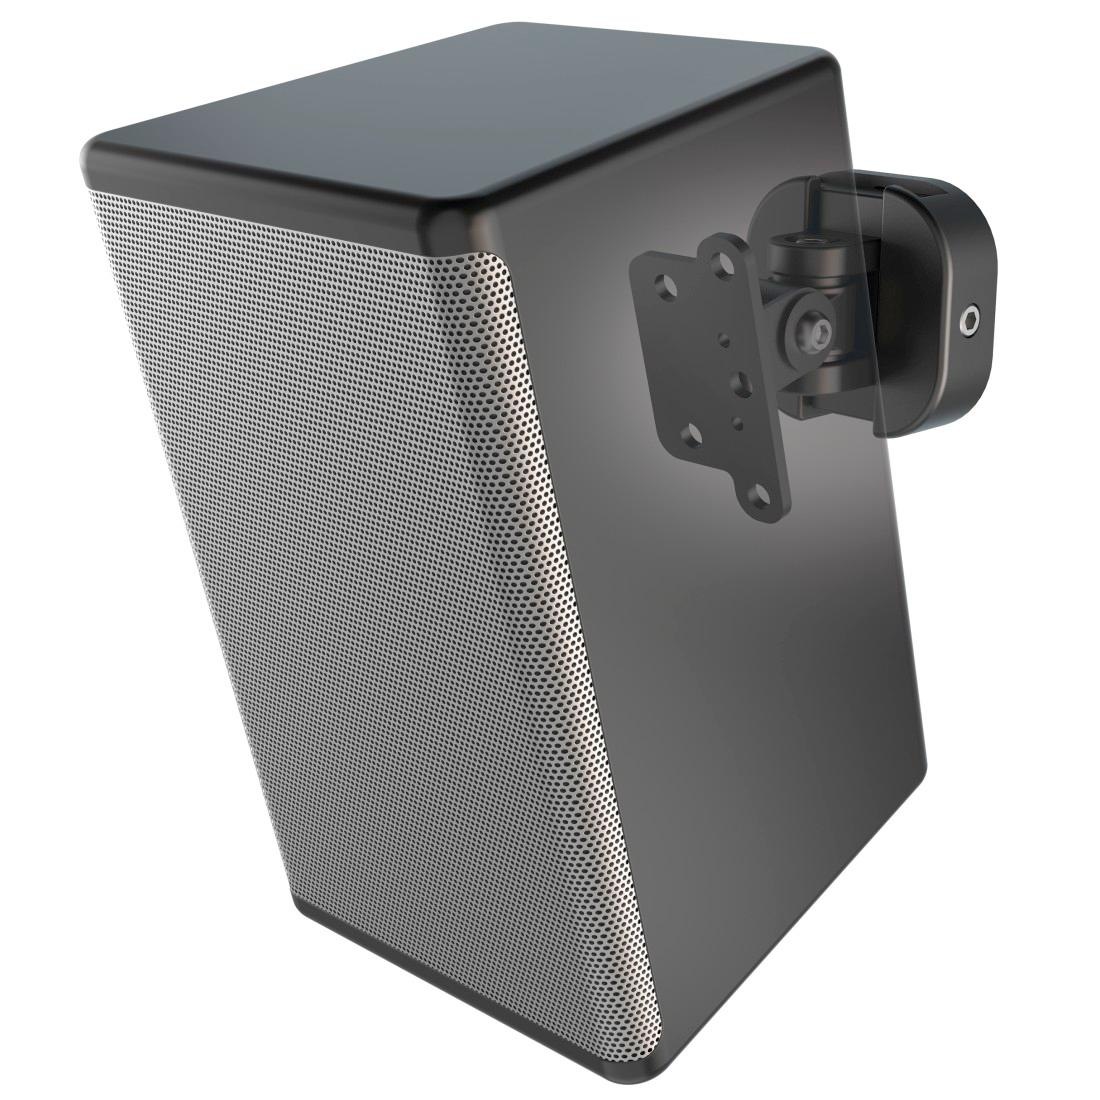 Hama Lautsprecher-Wandhalterung »Wandhalterung für Wireless Lautsprecher, voll beweglich, Schwarz«, - Neigung +/-: 85 / 85 °
- Schwenkbereich: 130 °